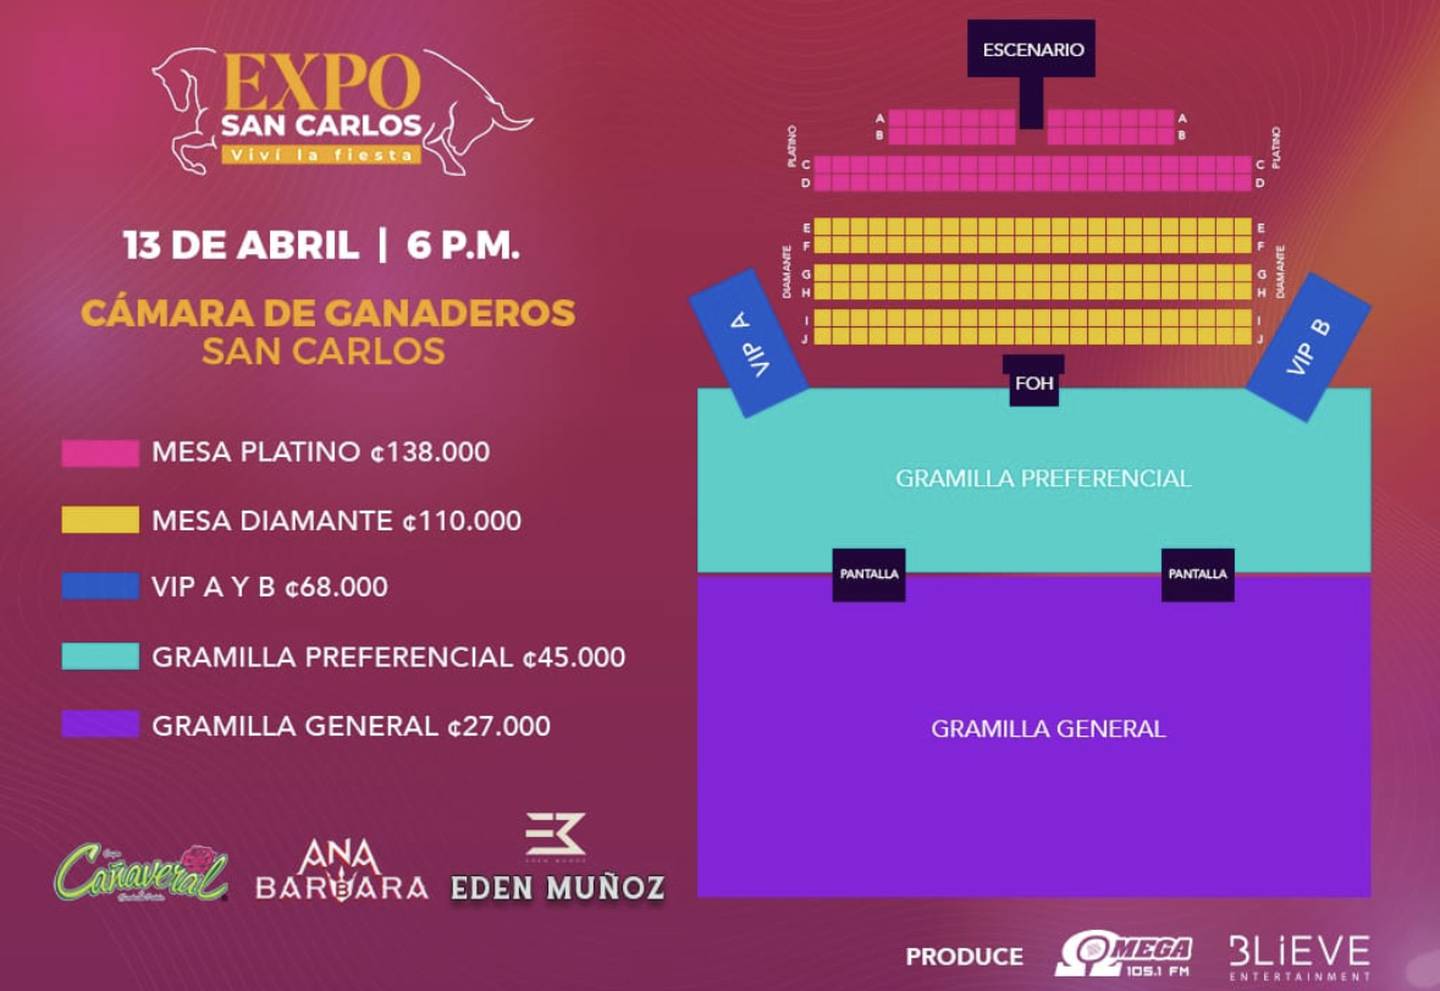 Expo San Carlos